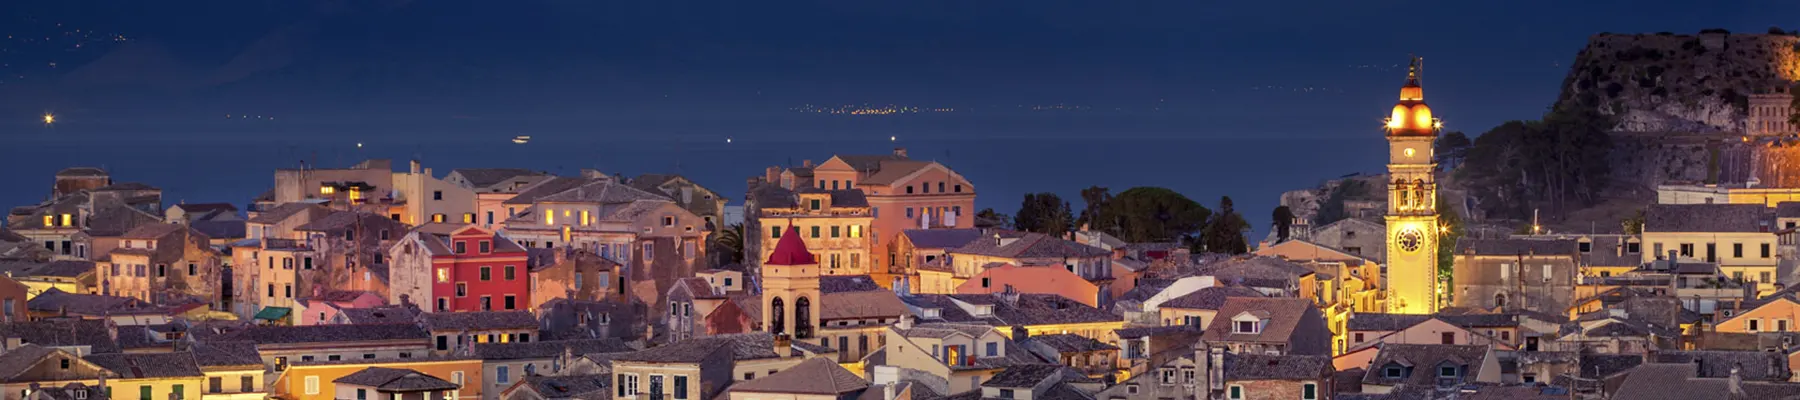 Corfu By Night Image